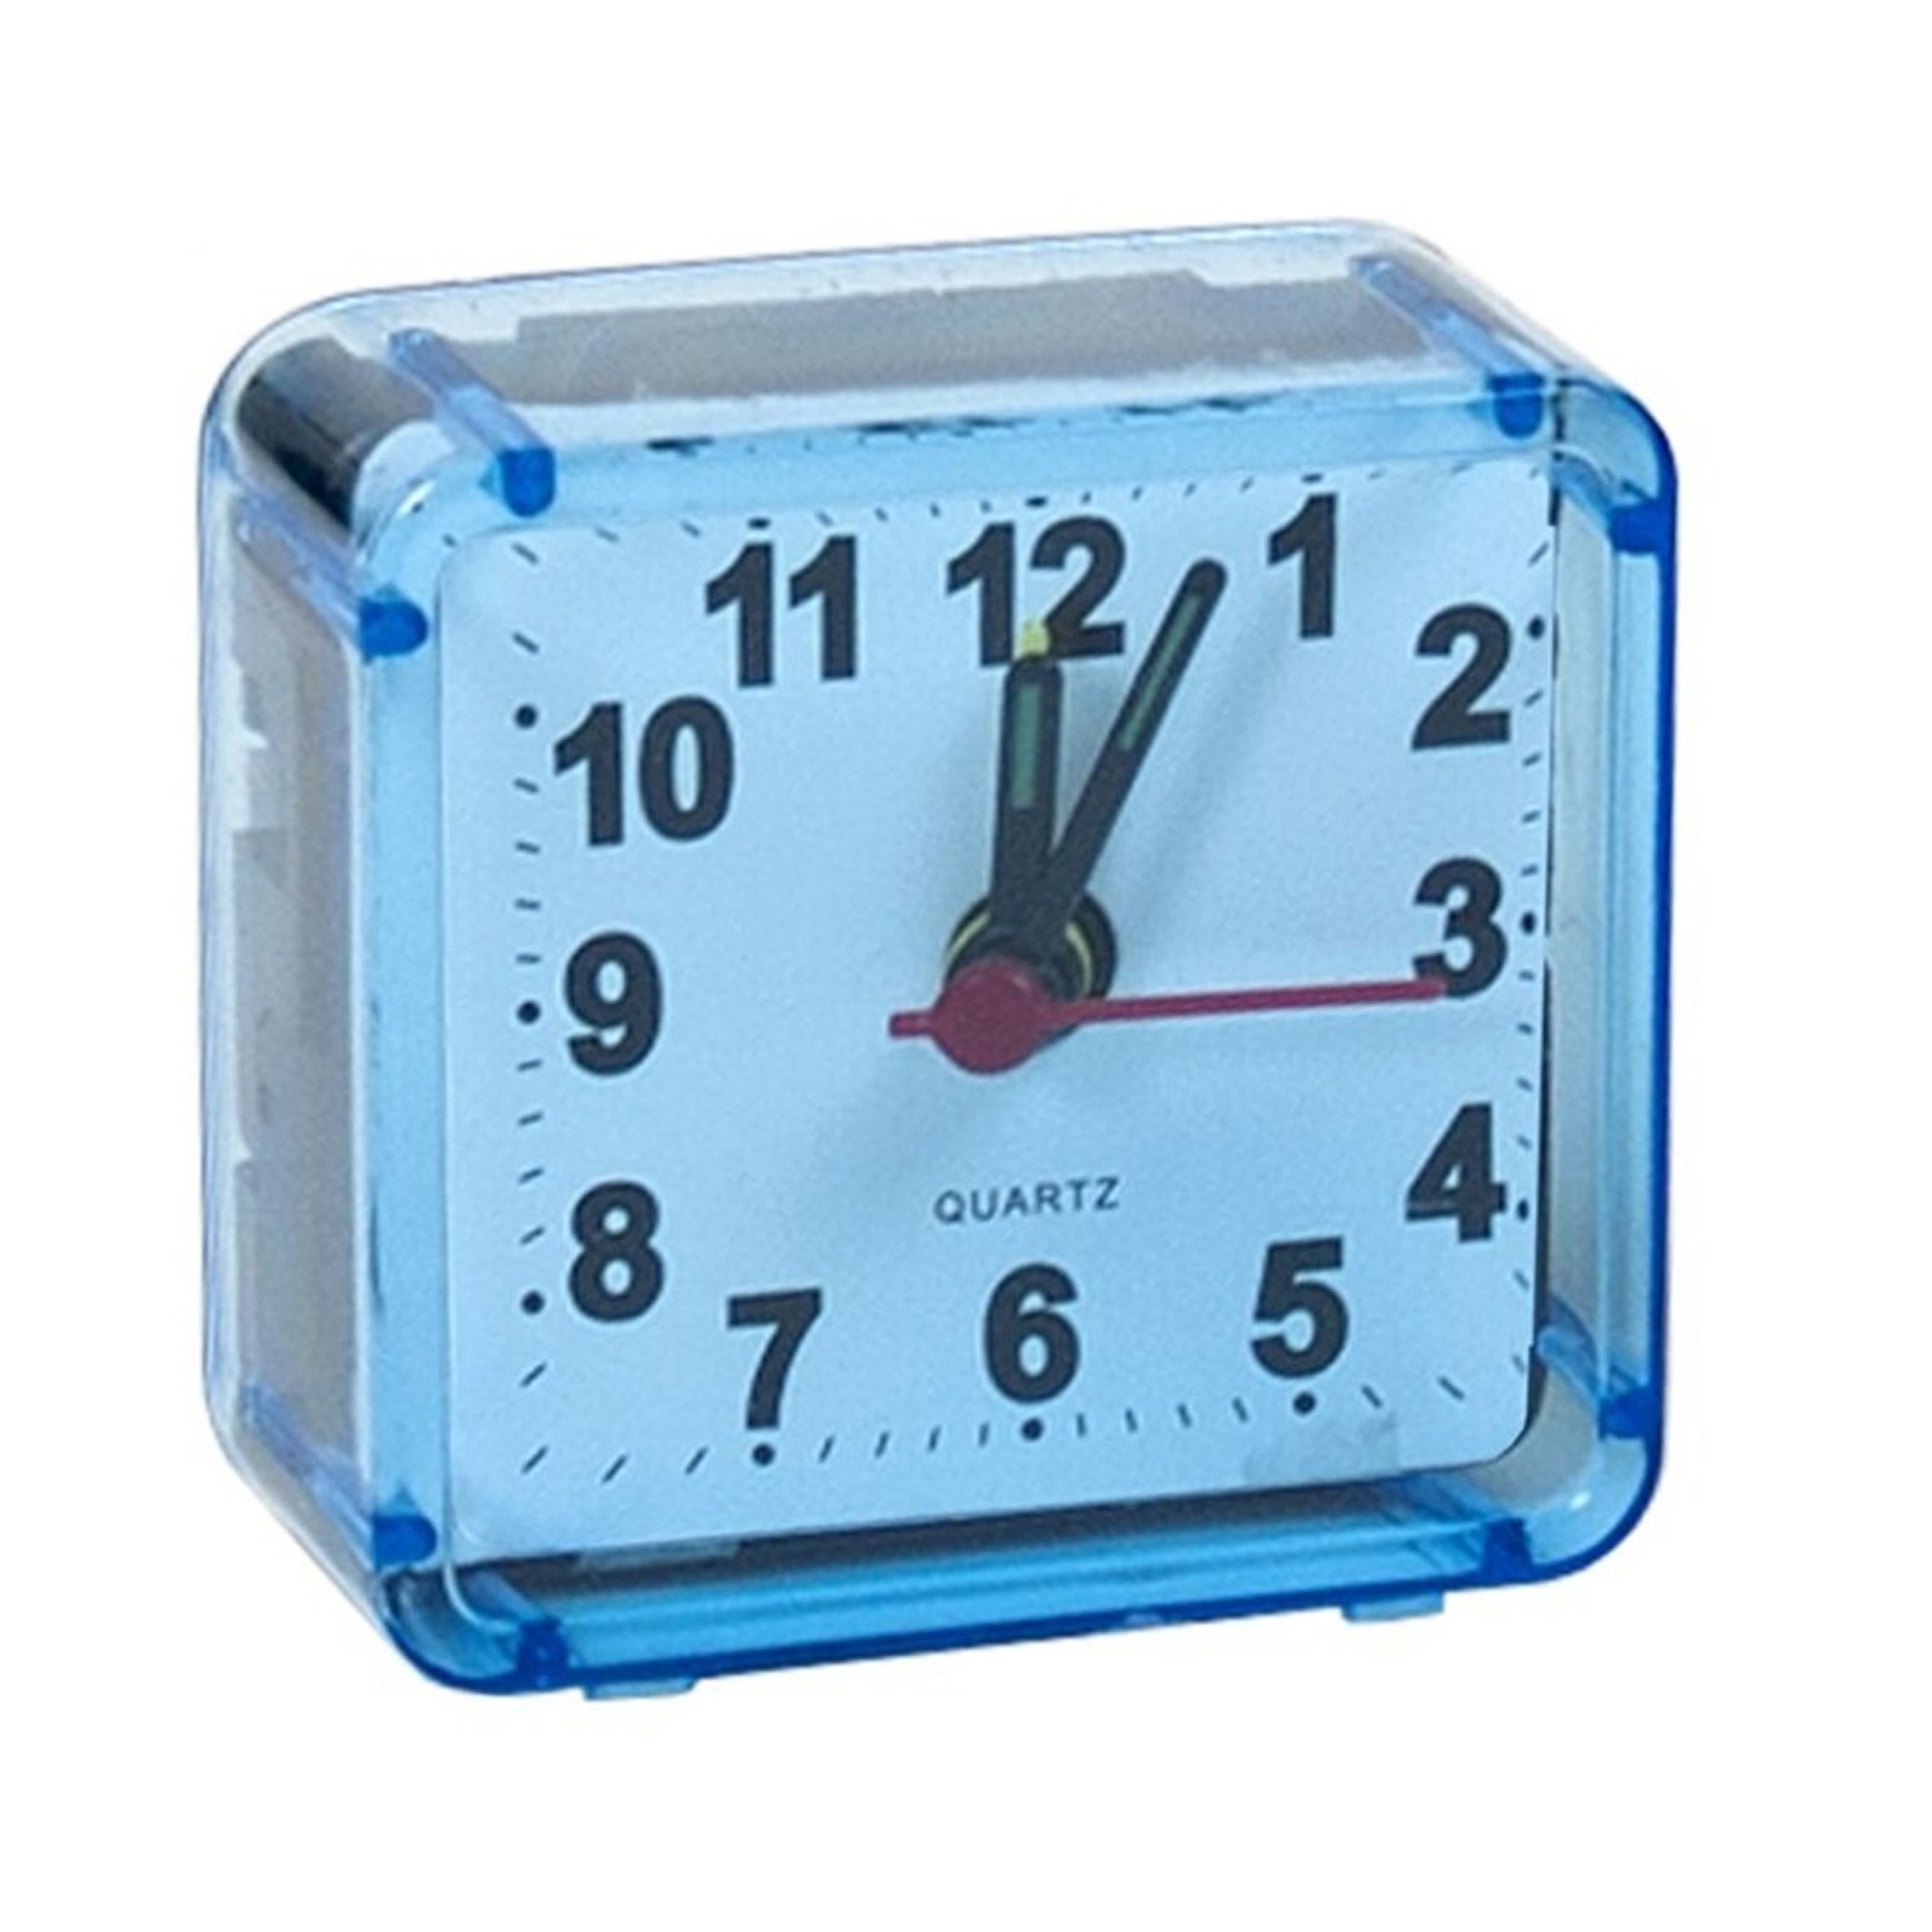 Gerimport Reiswekker/alarmklok analoog - licht blauw - kunststof - 6 x 3 cm - klein model -